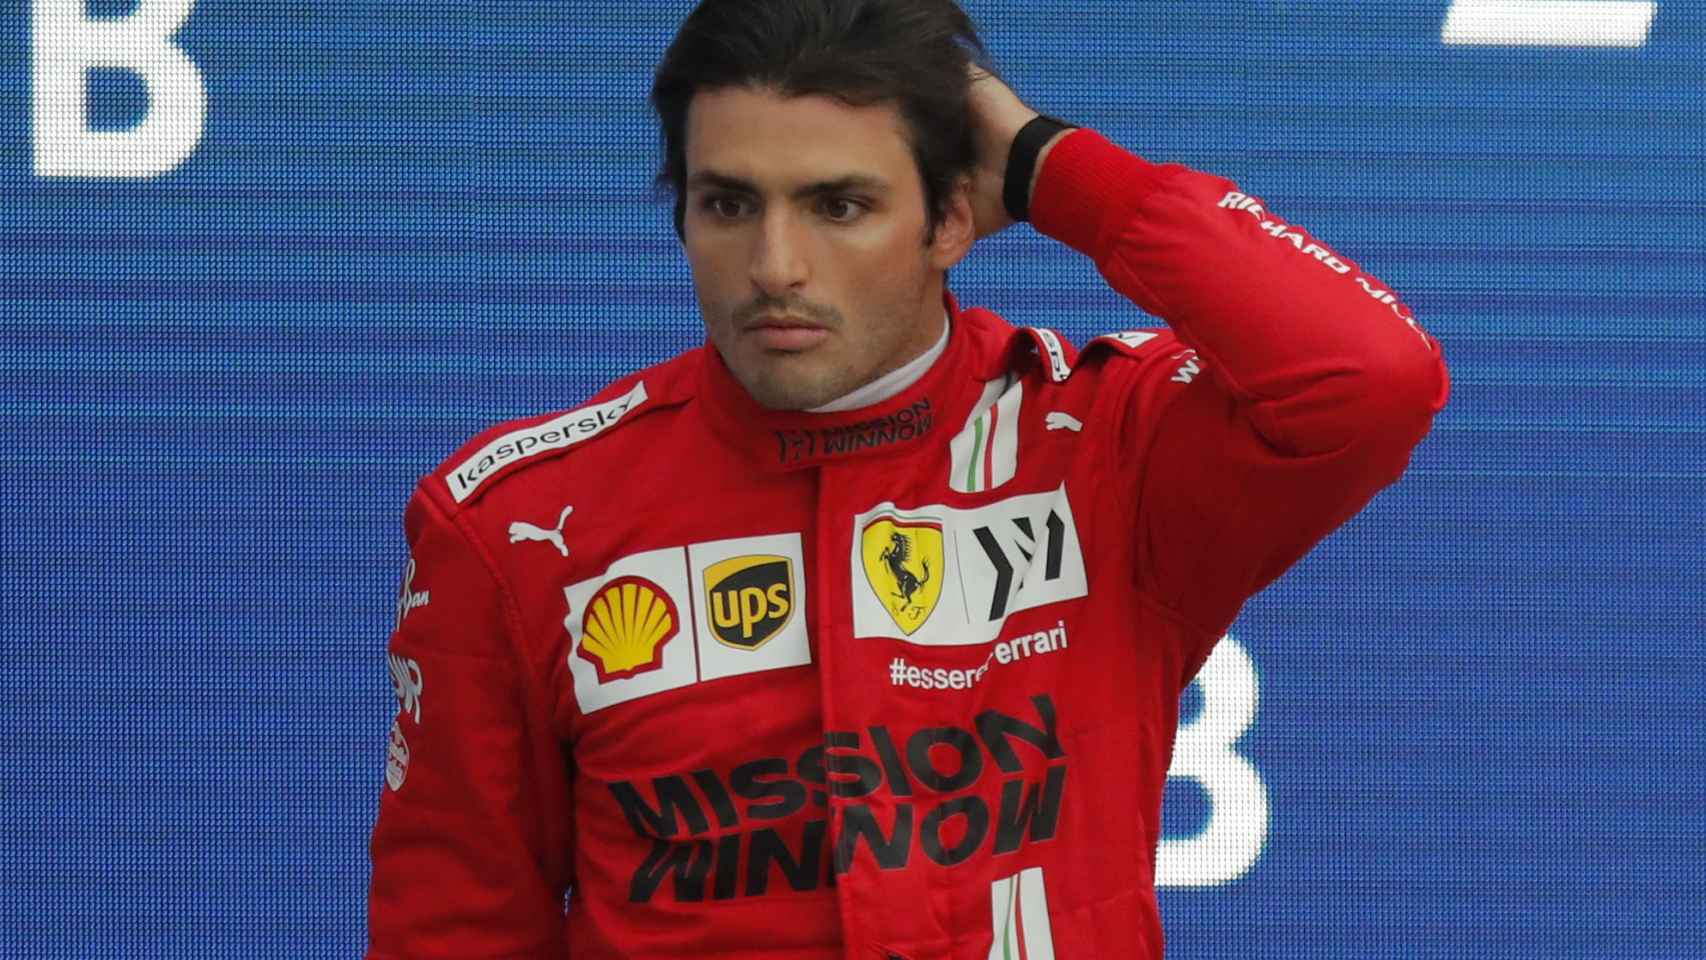 Carlos Sainz en el podio del GP de Rusia